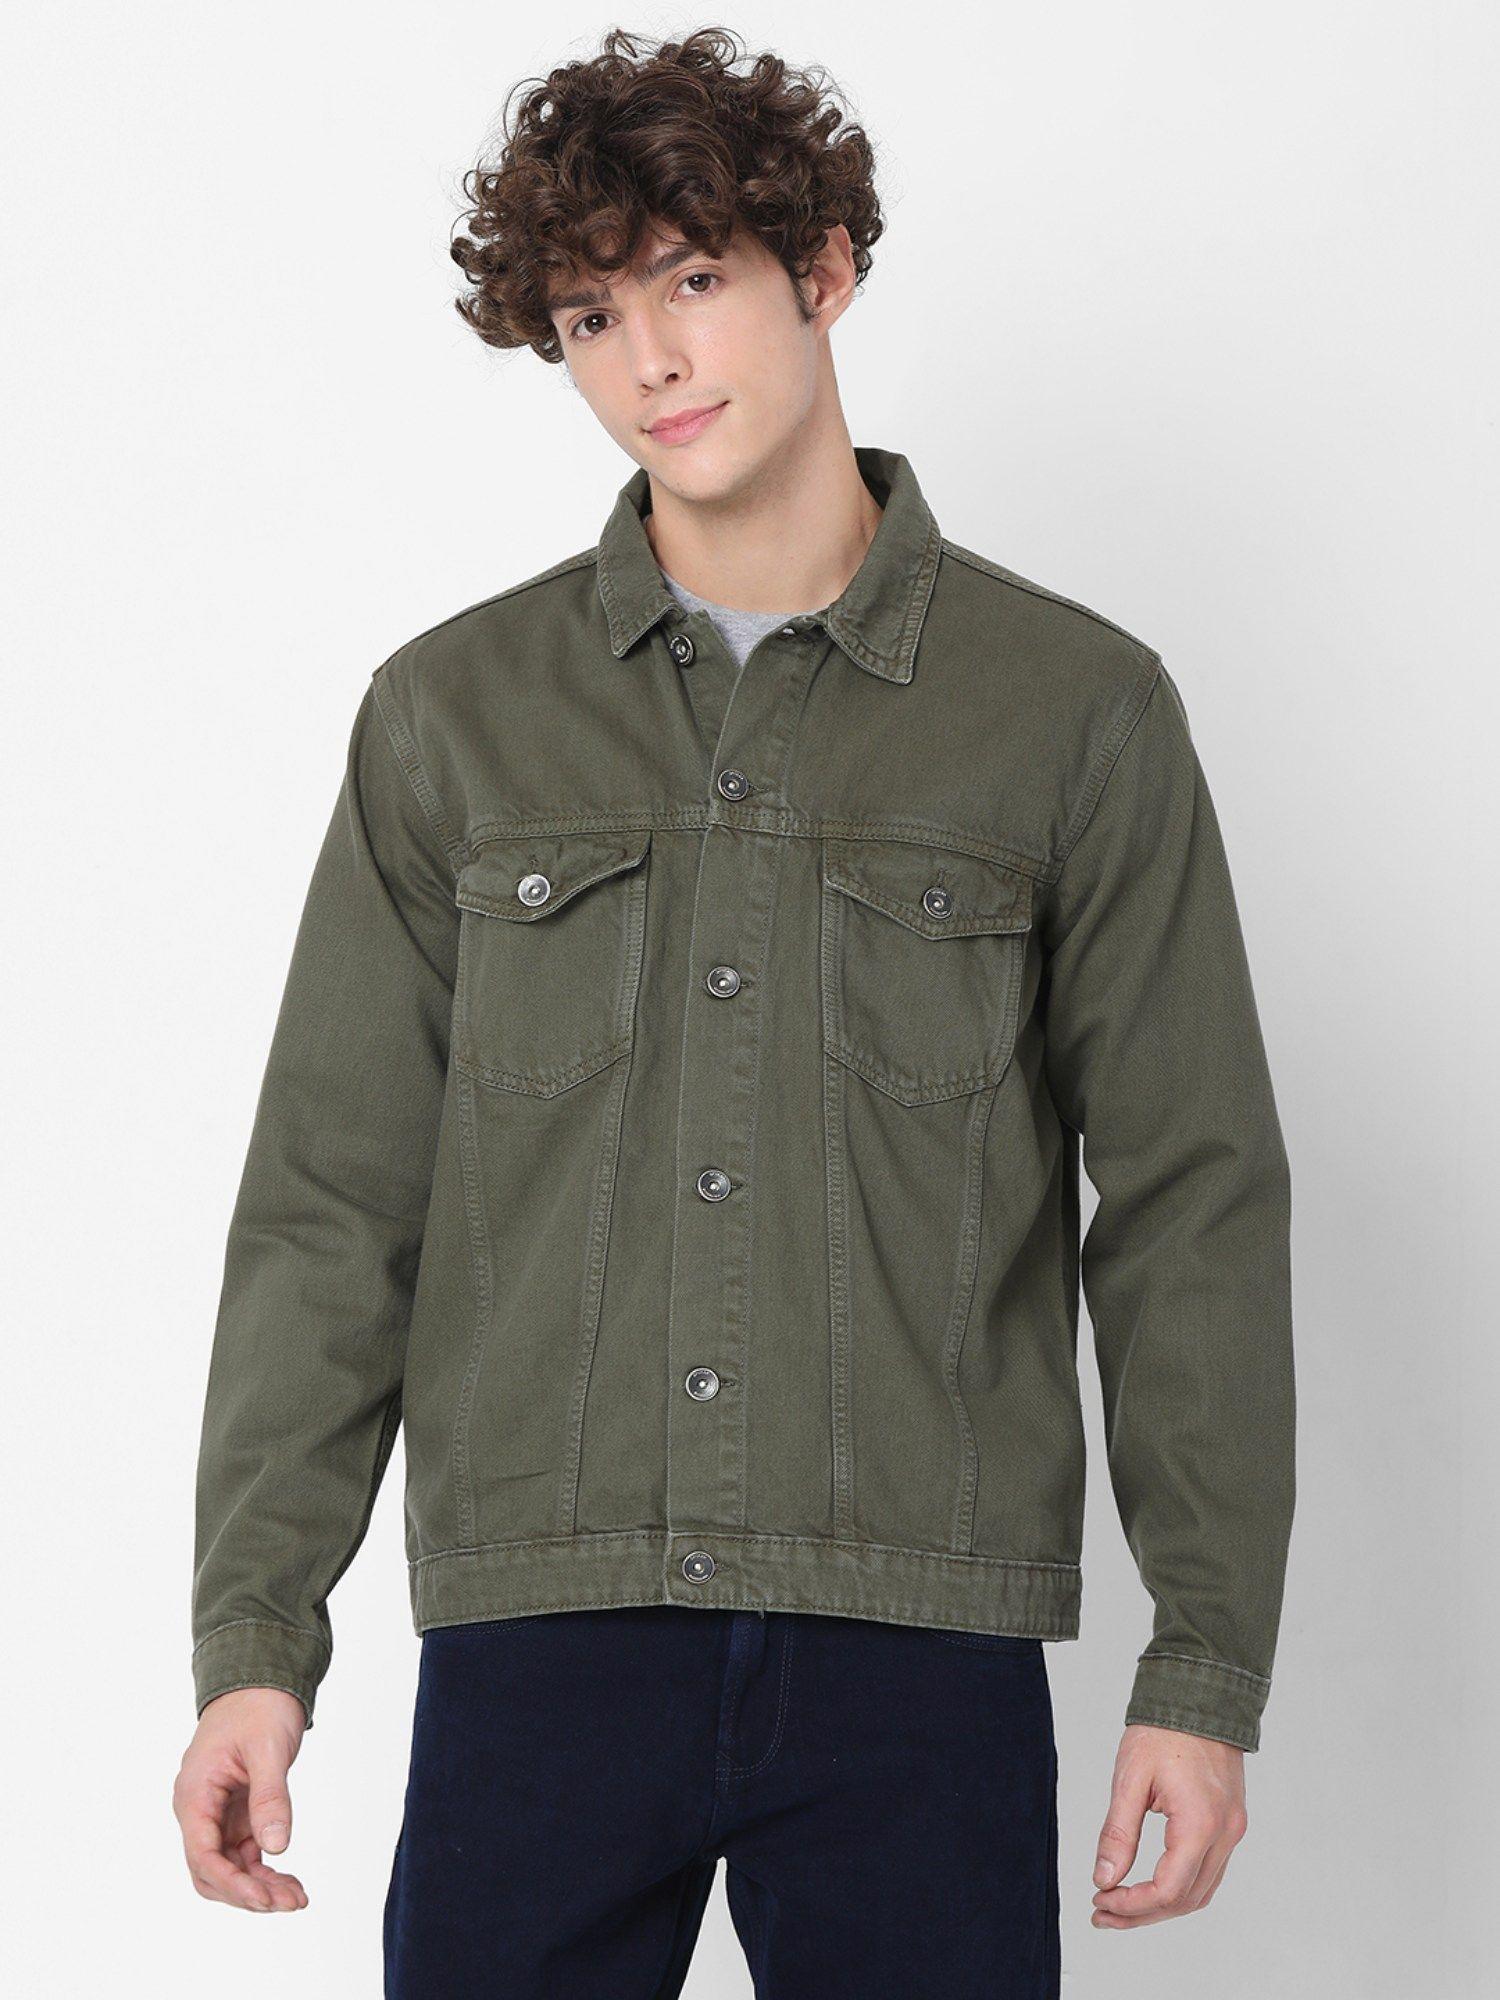 green full sleeve denim jackets for men's